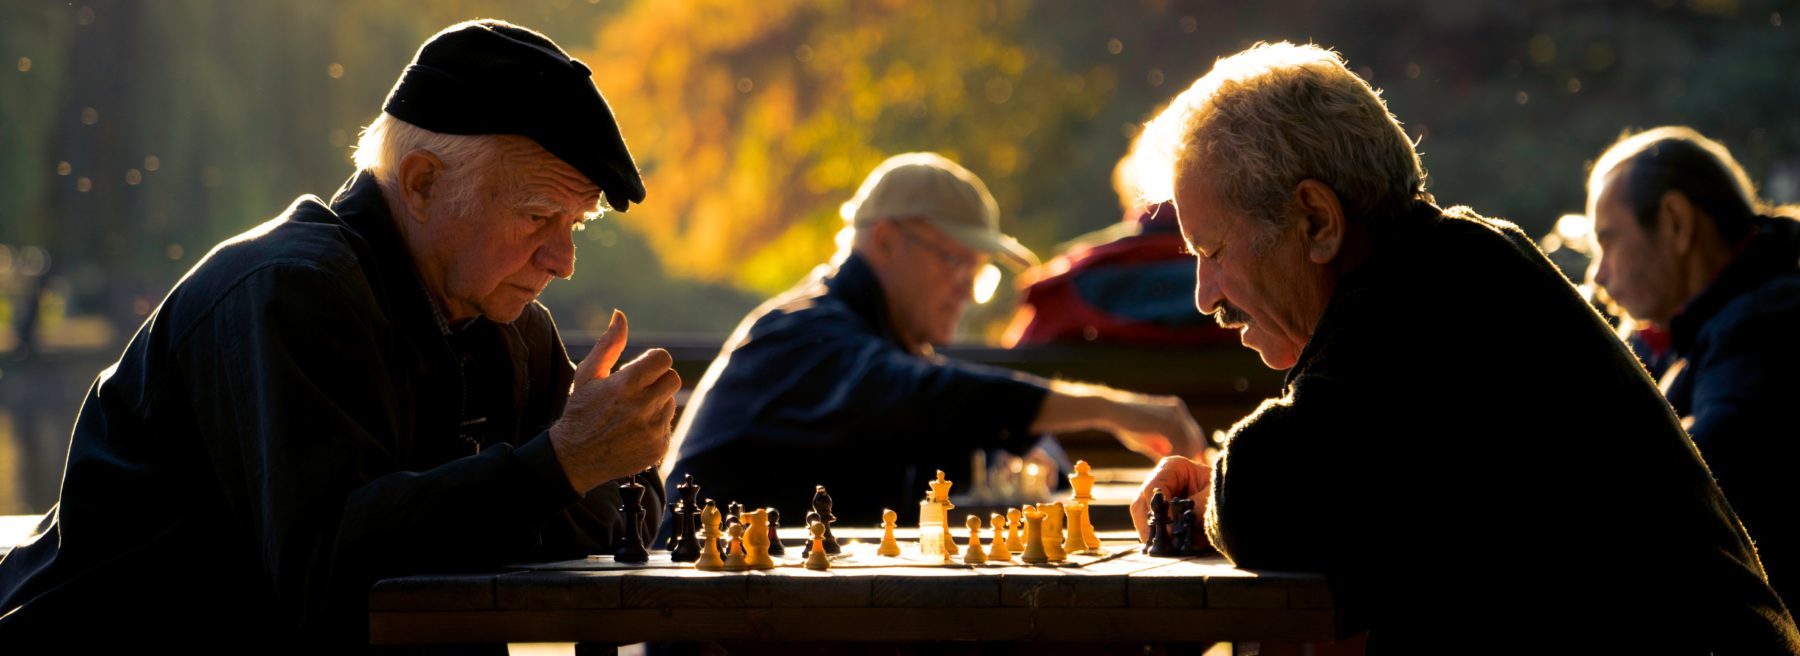 Zwei Schach spielende Männer im Spätsommer